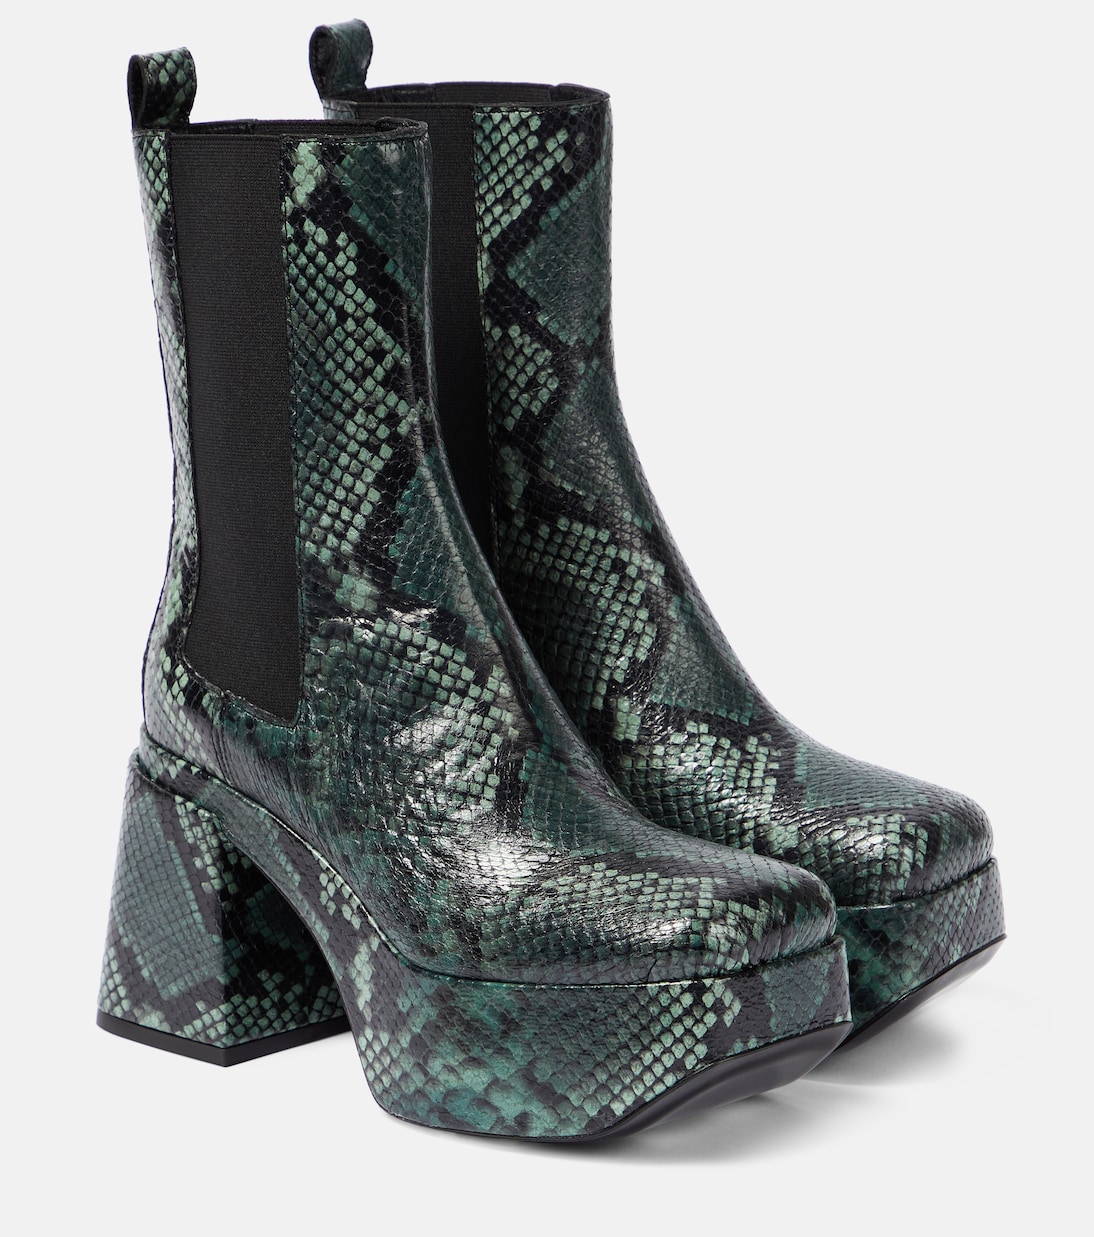 Кожаные ботинки челси со змеиным принтом Dorothee Schumacher, мультиколор